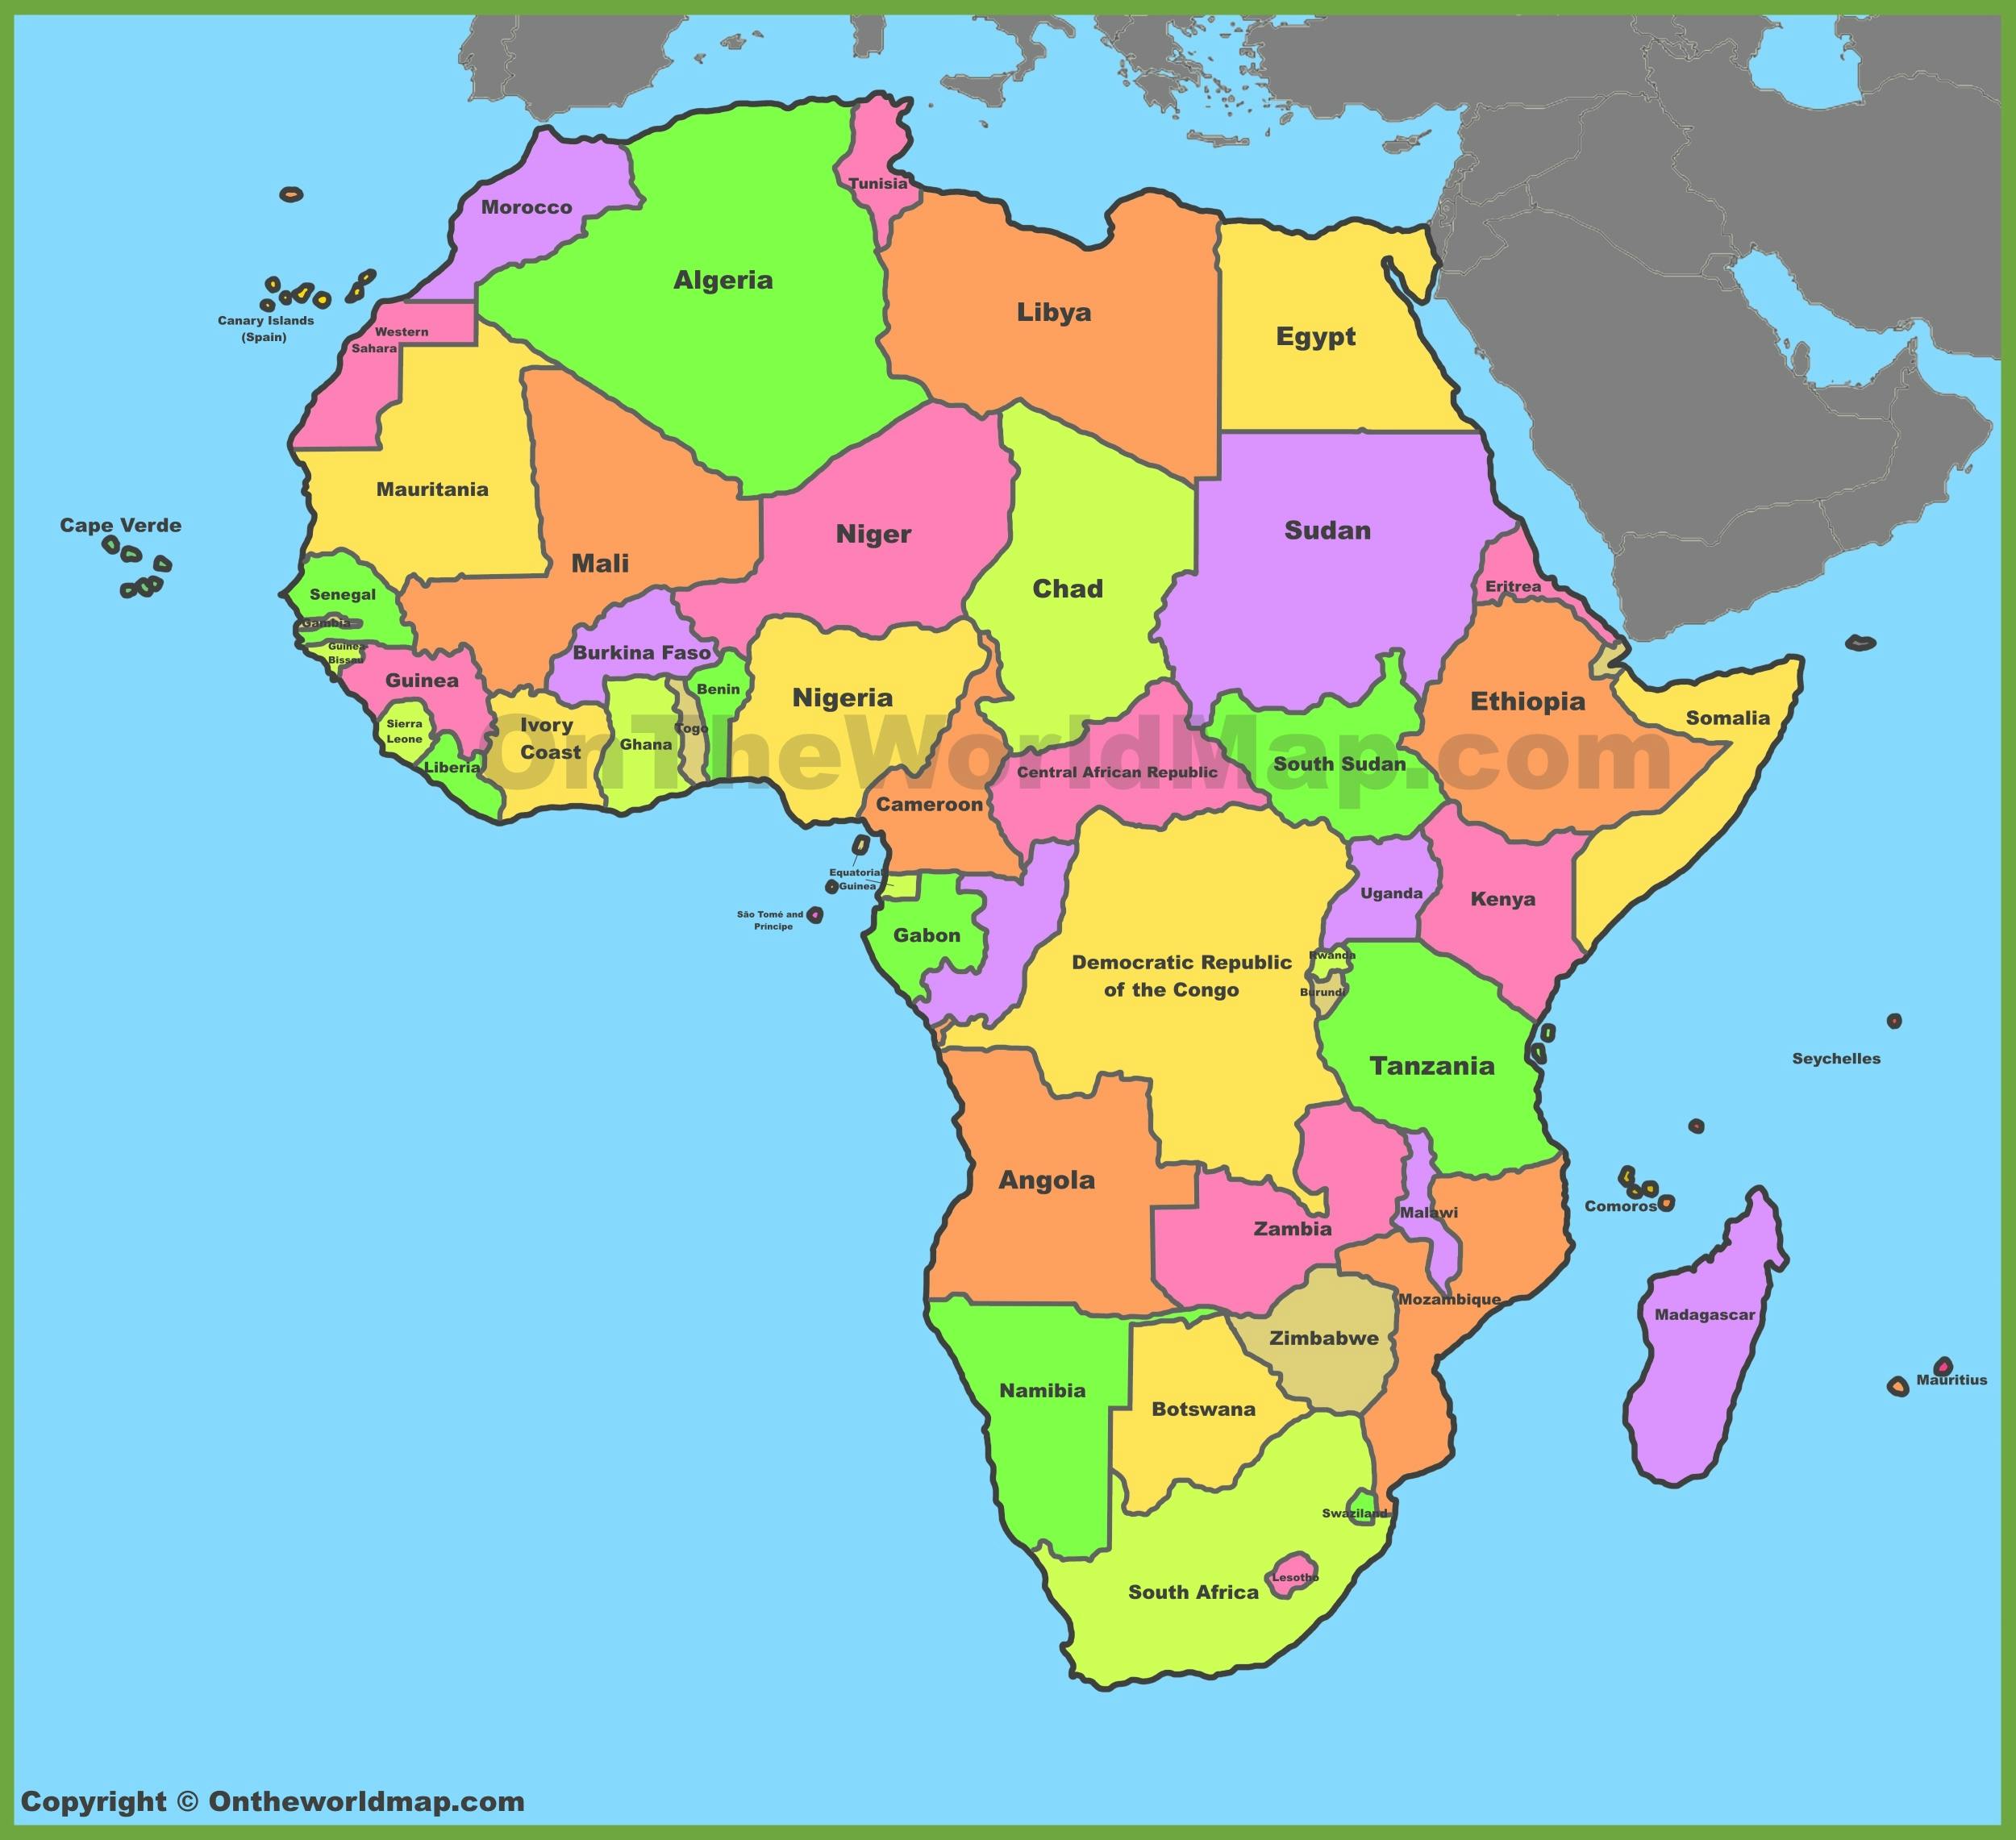 https://ontheworldmap.com/africa/africa-political-map.jpg